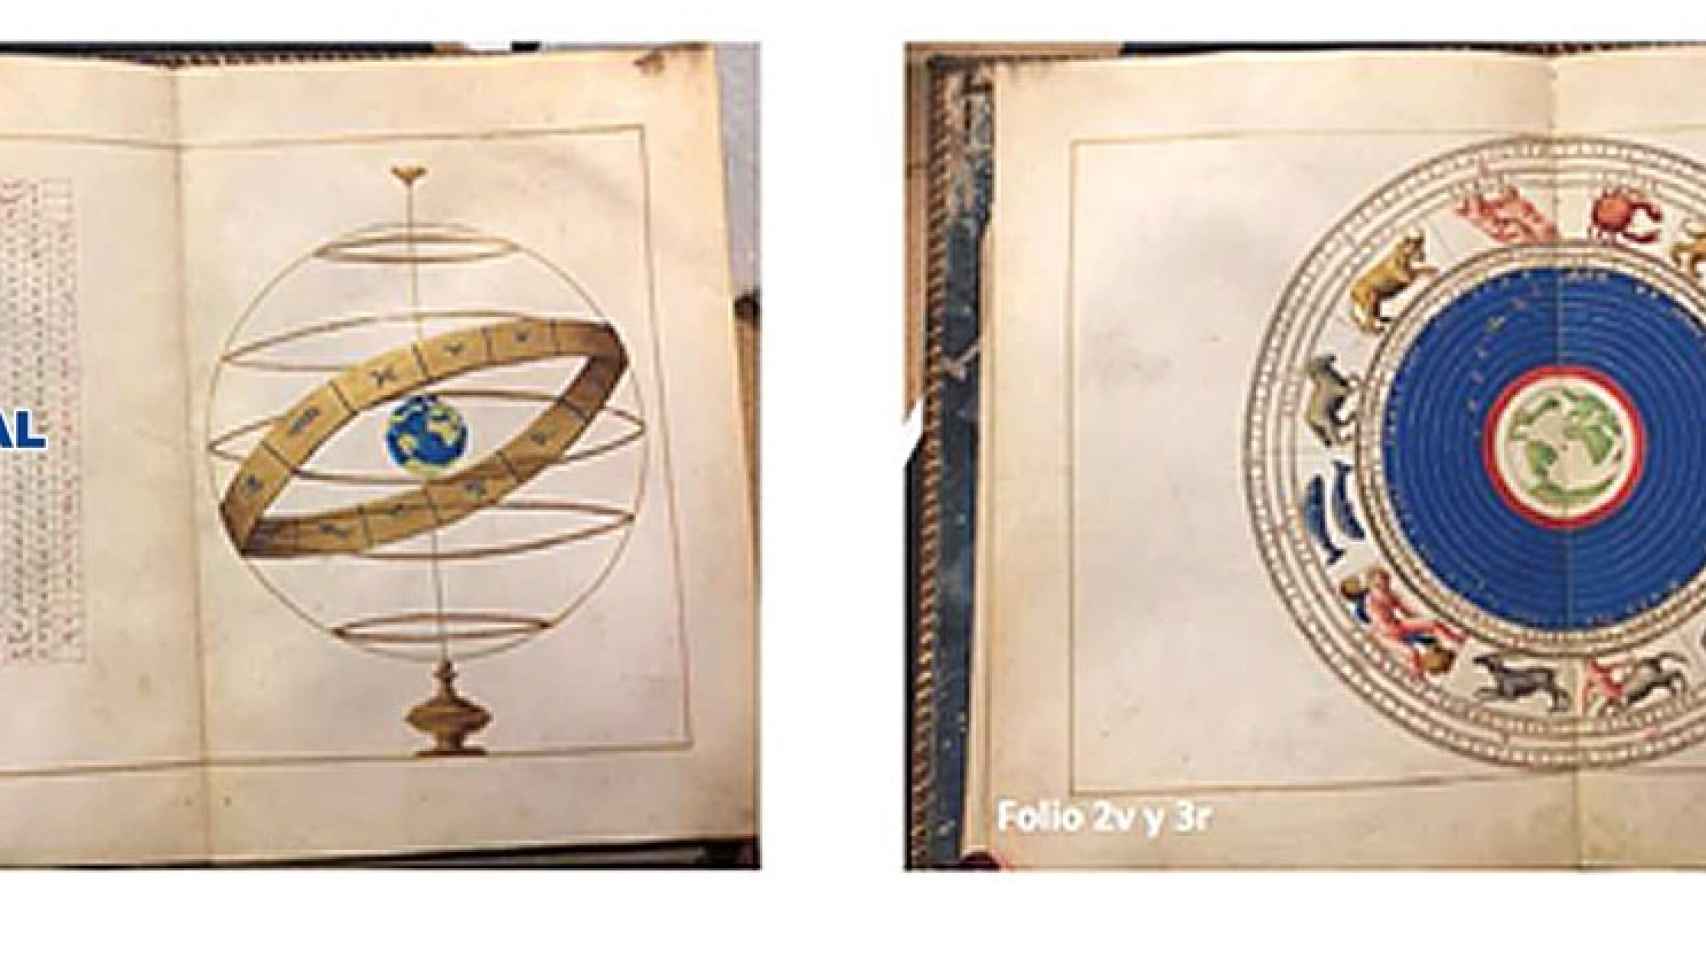 El atlas portulano de Battista Agnese recuperado por la policía.